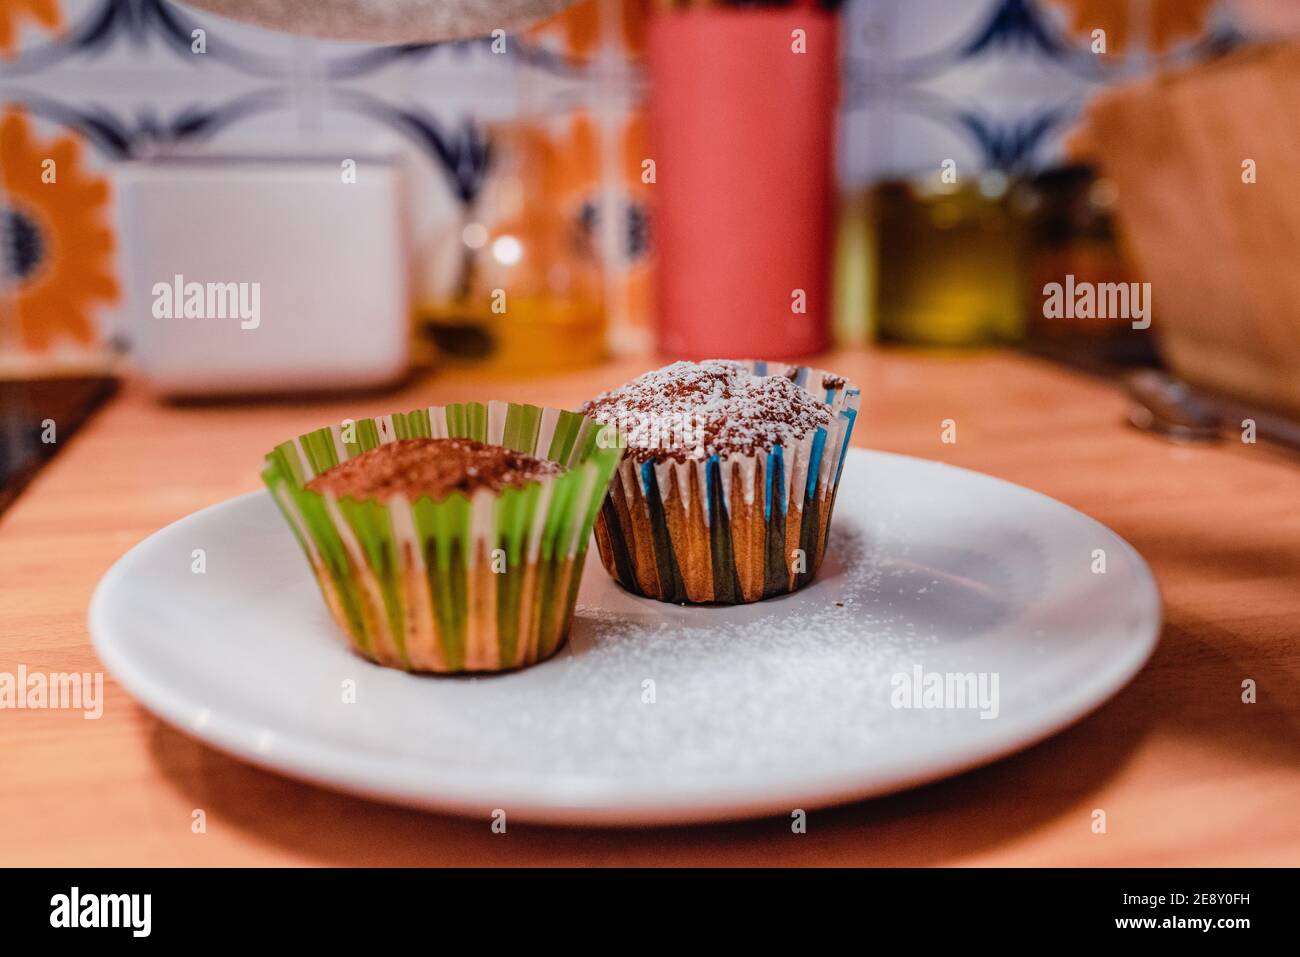 Muffin con zucchero a velo sulla parte superiore e involucri colorati un piatto sopra il bancone della cucina Foto Stock